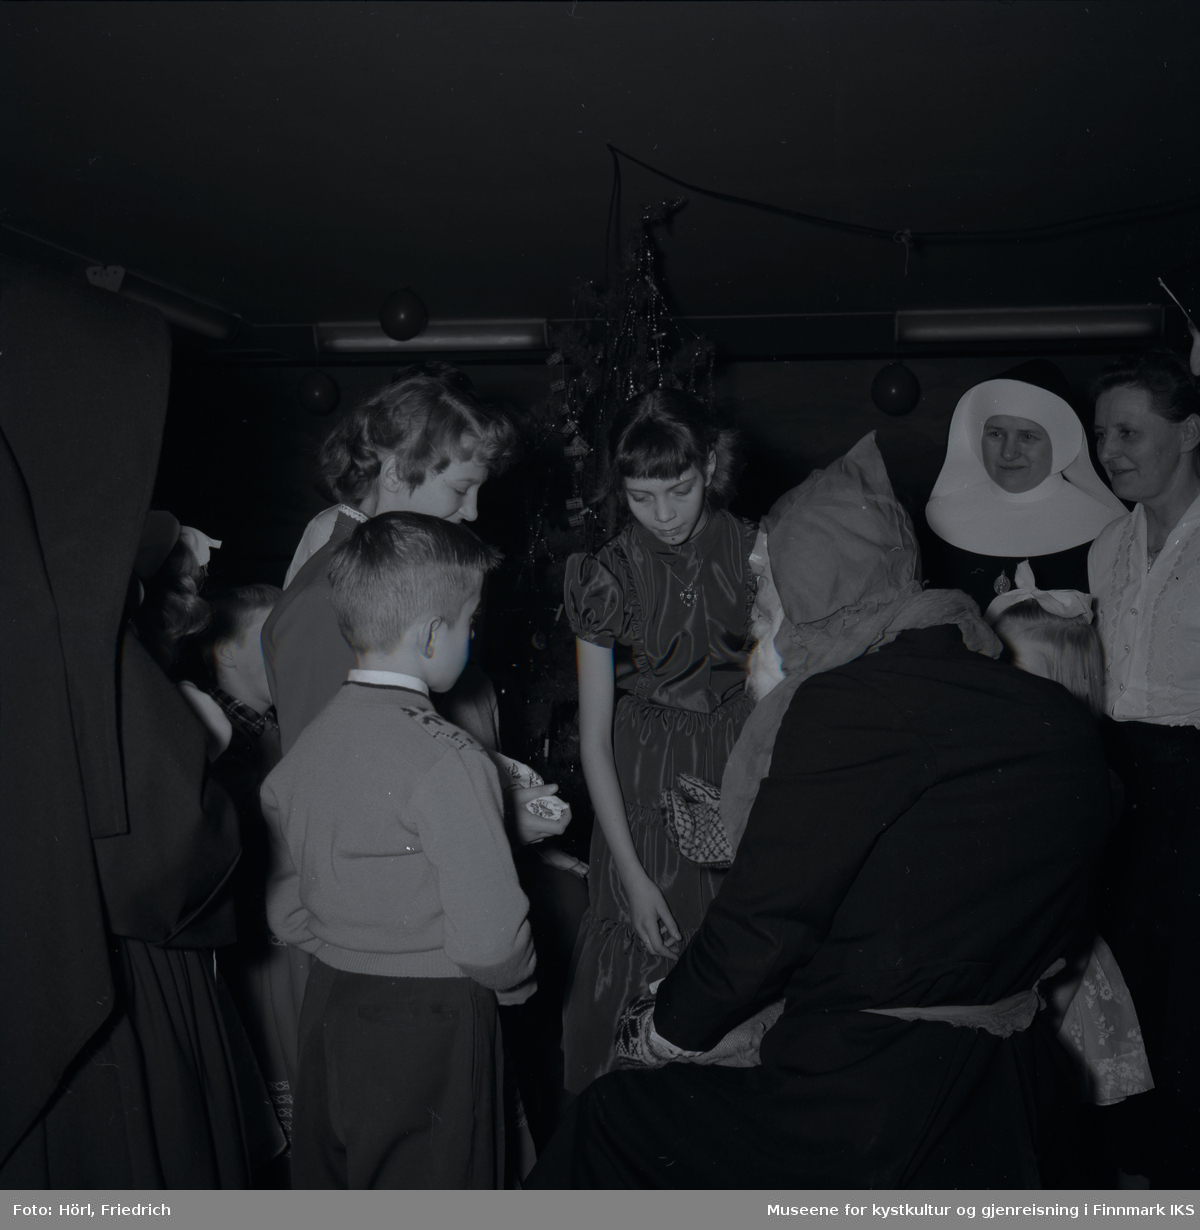 Julenissen er på besøk på juletrefesten til den katolske menigheten i Hammerfest i 1957. Barna mottar gaver mens de voksne, samt to nonner, ser på. Jenta til venstre i midten av bilde er Lillian Trondsen. Til høyre for henne står Kamilla Trondsen. I bakgrunnen ser man juletreet.